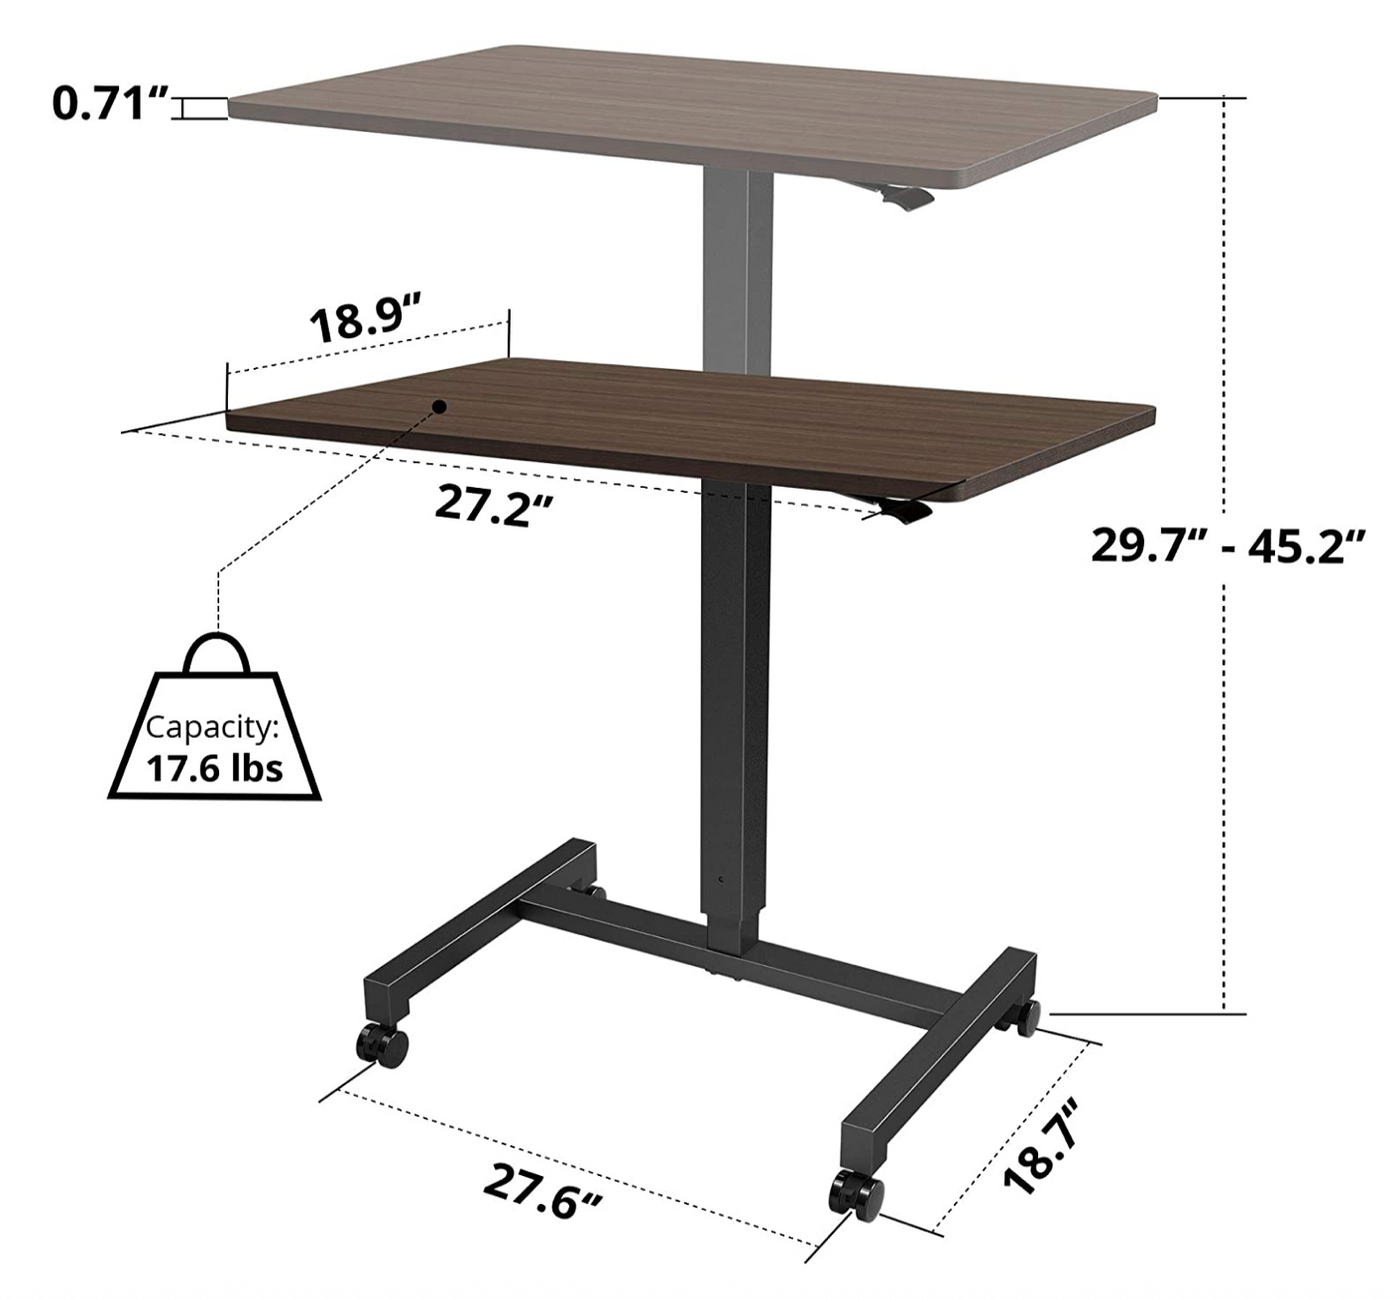 The FitDesk® Adjustable Mobile Desk